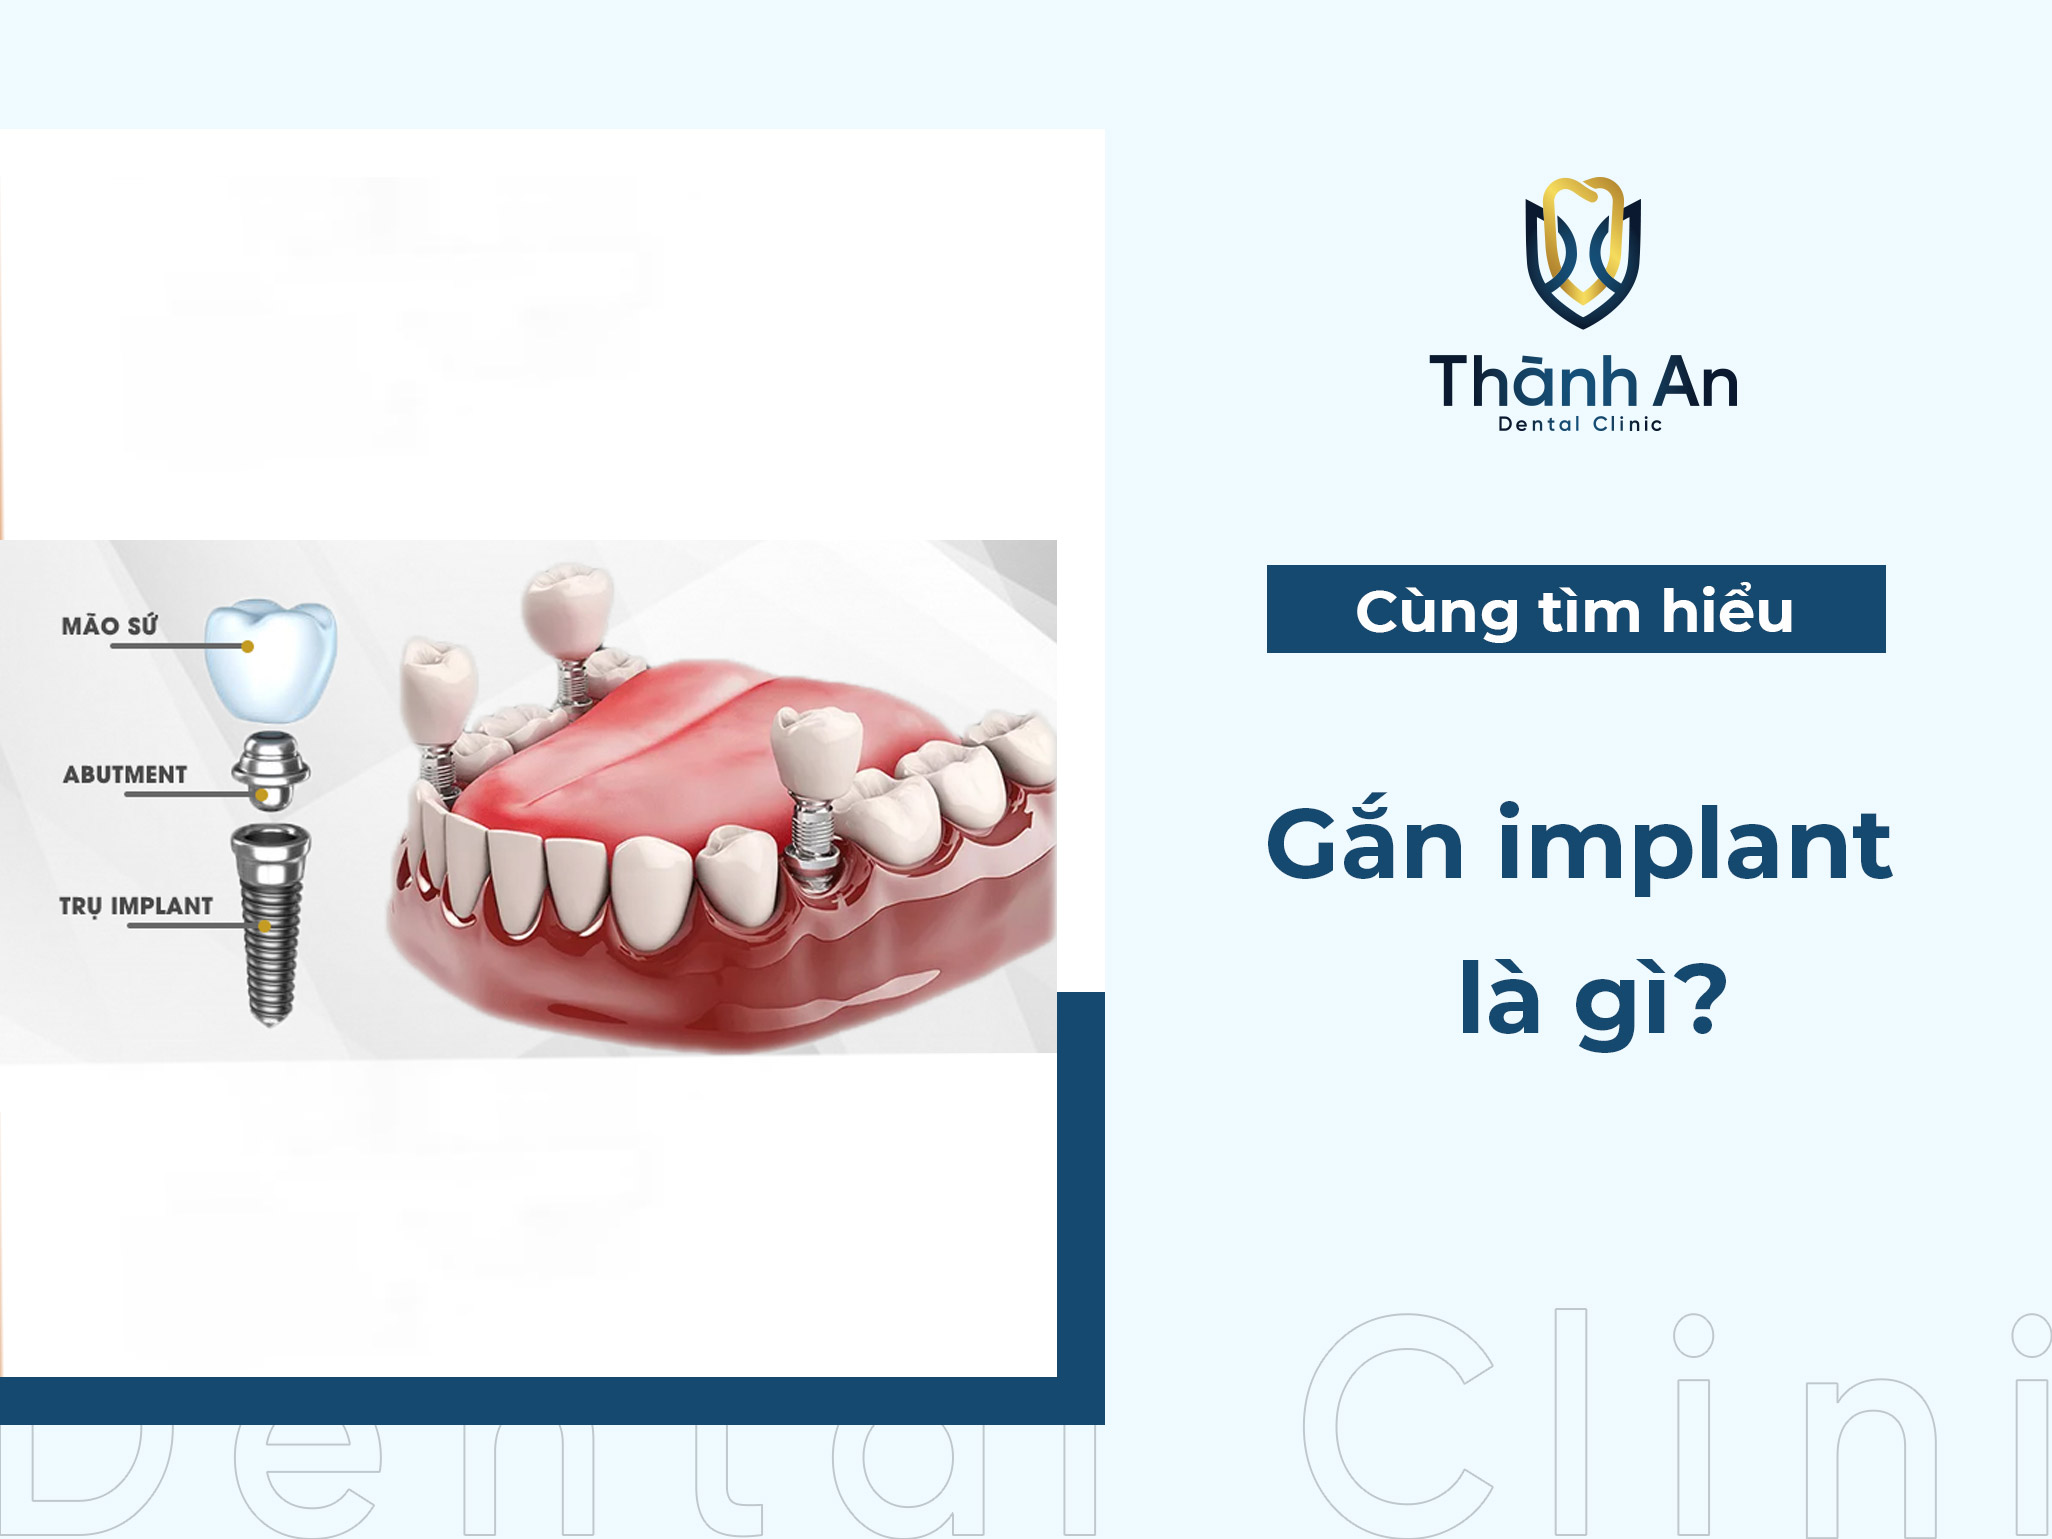 Gắn implant là gì? Tại sao cần gắn implant?